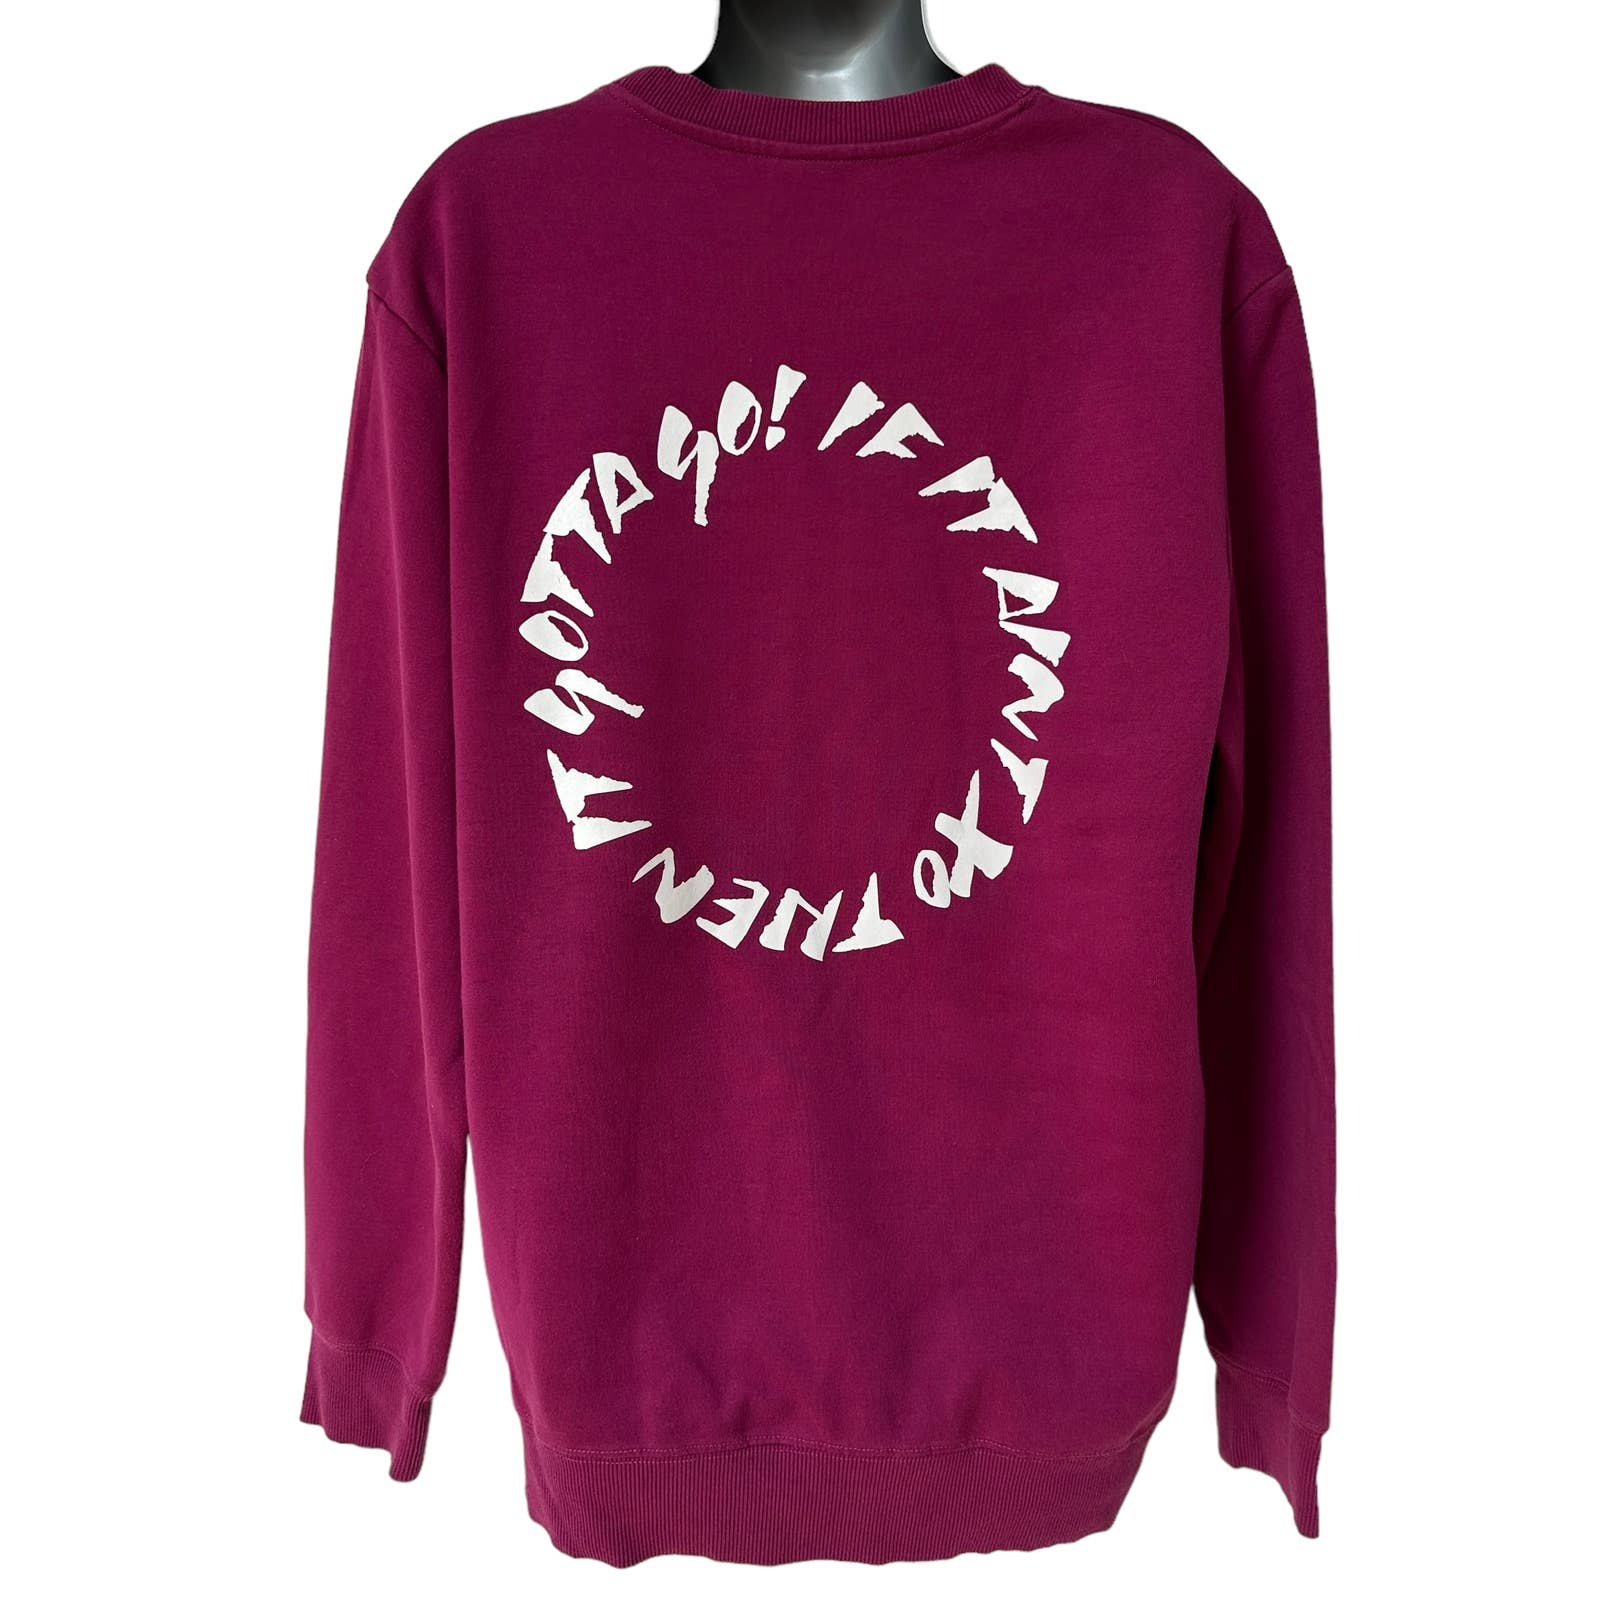 H&M x The Weeknd Sweatshirt Magenta Purple White Reminder Pullover ...